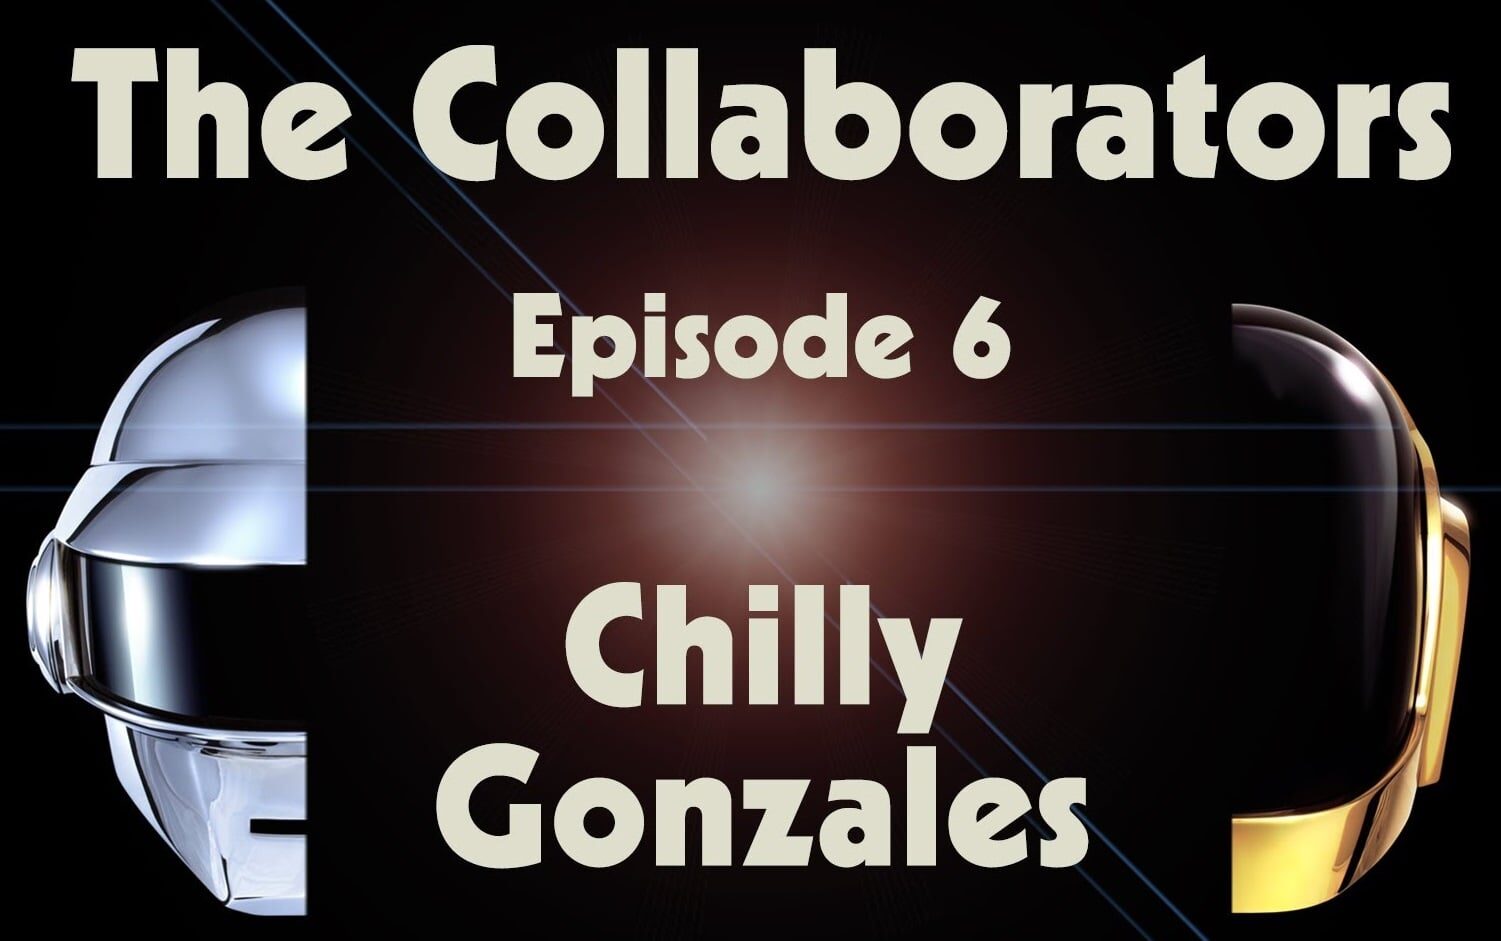 Episodio 6 de The Collaborators con Chilly Gonzales